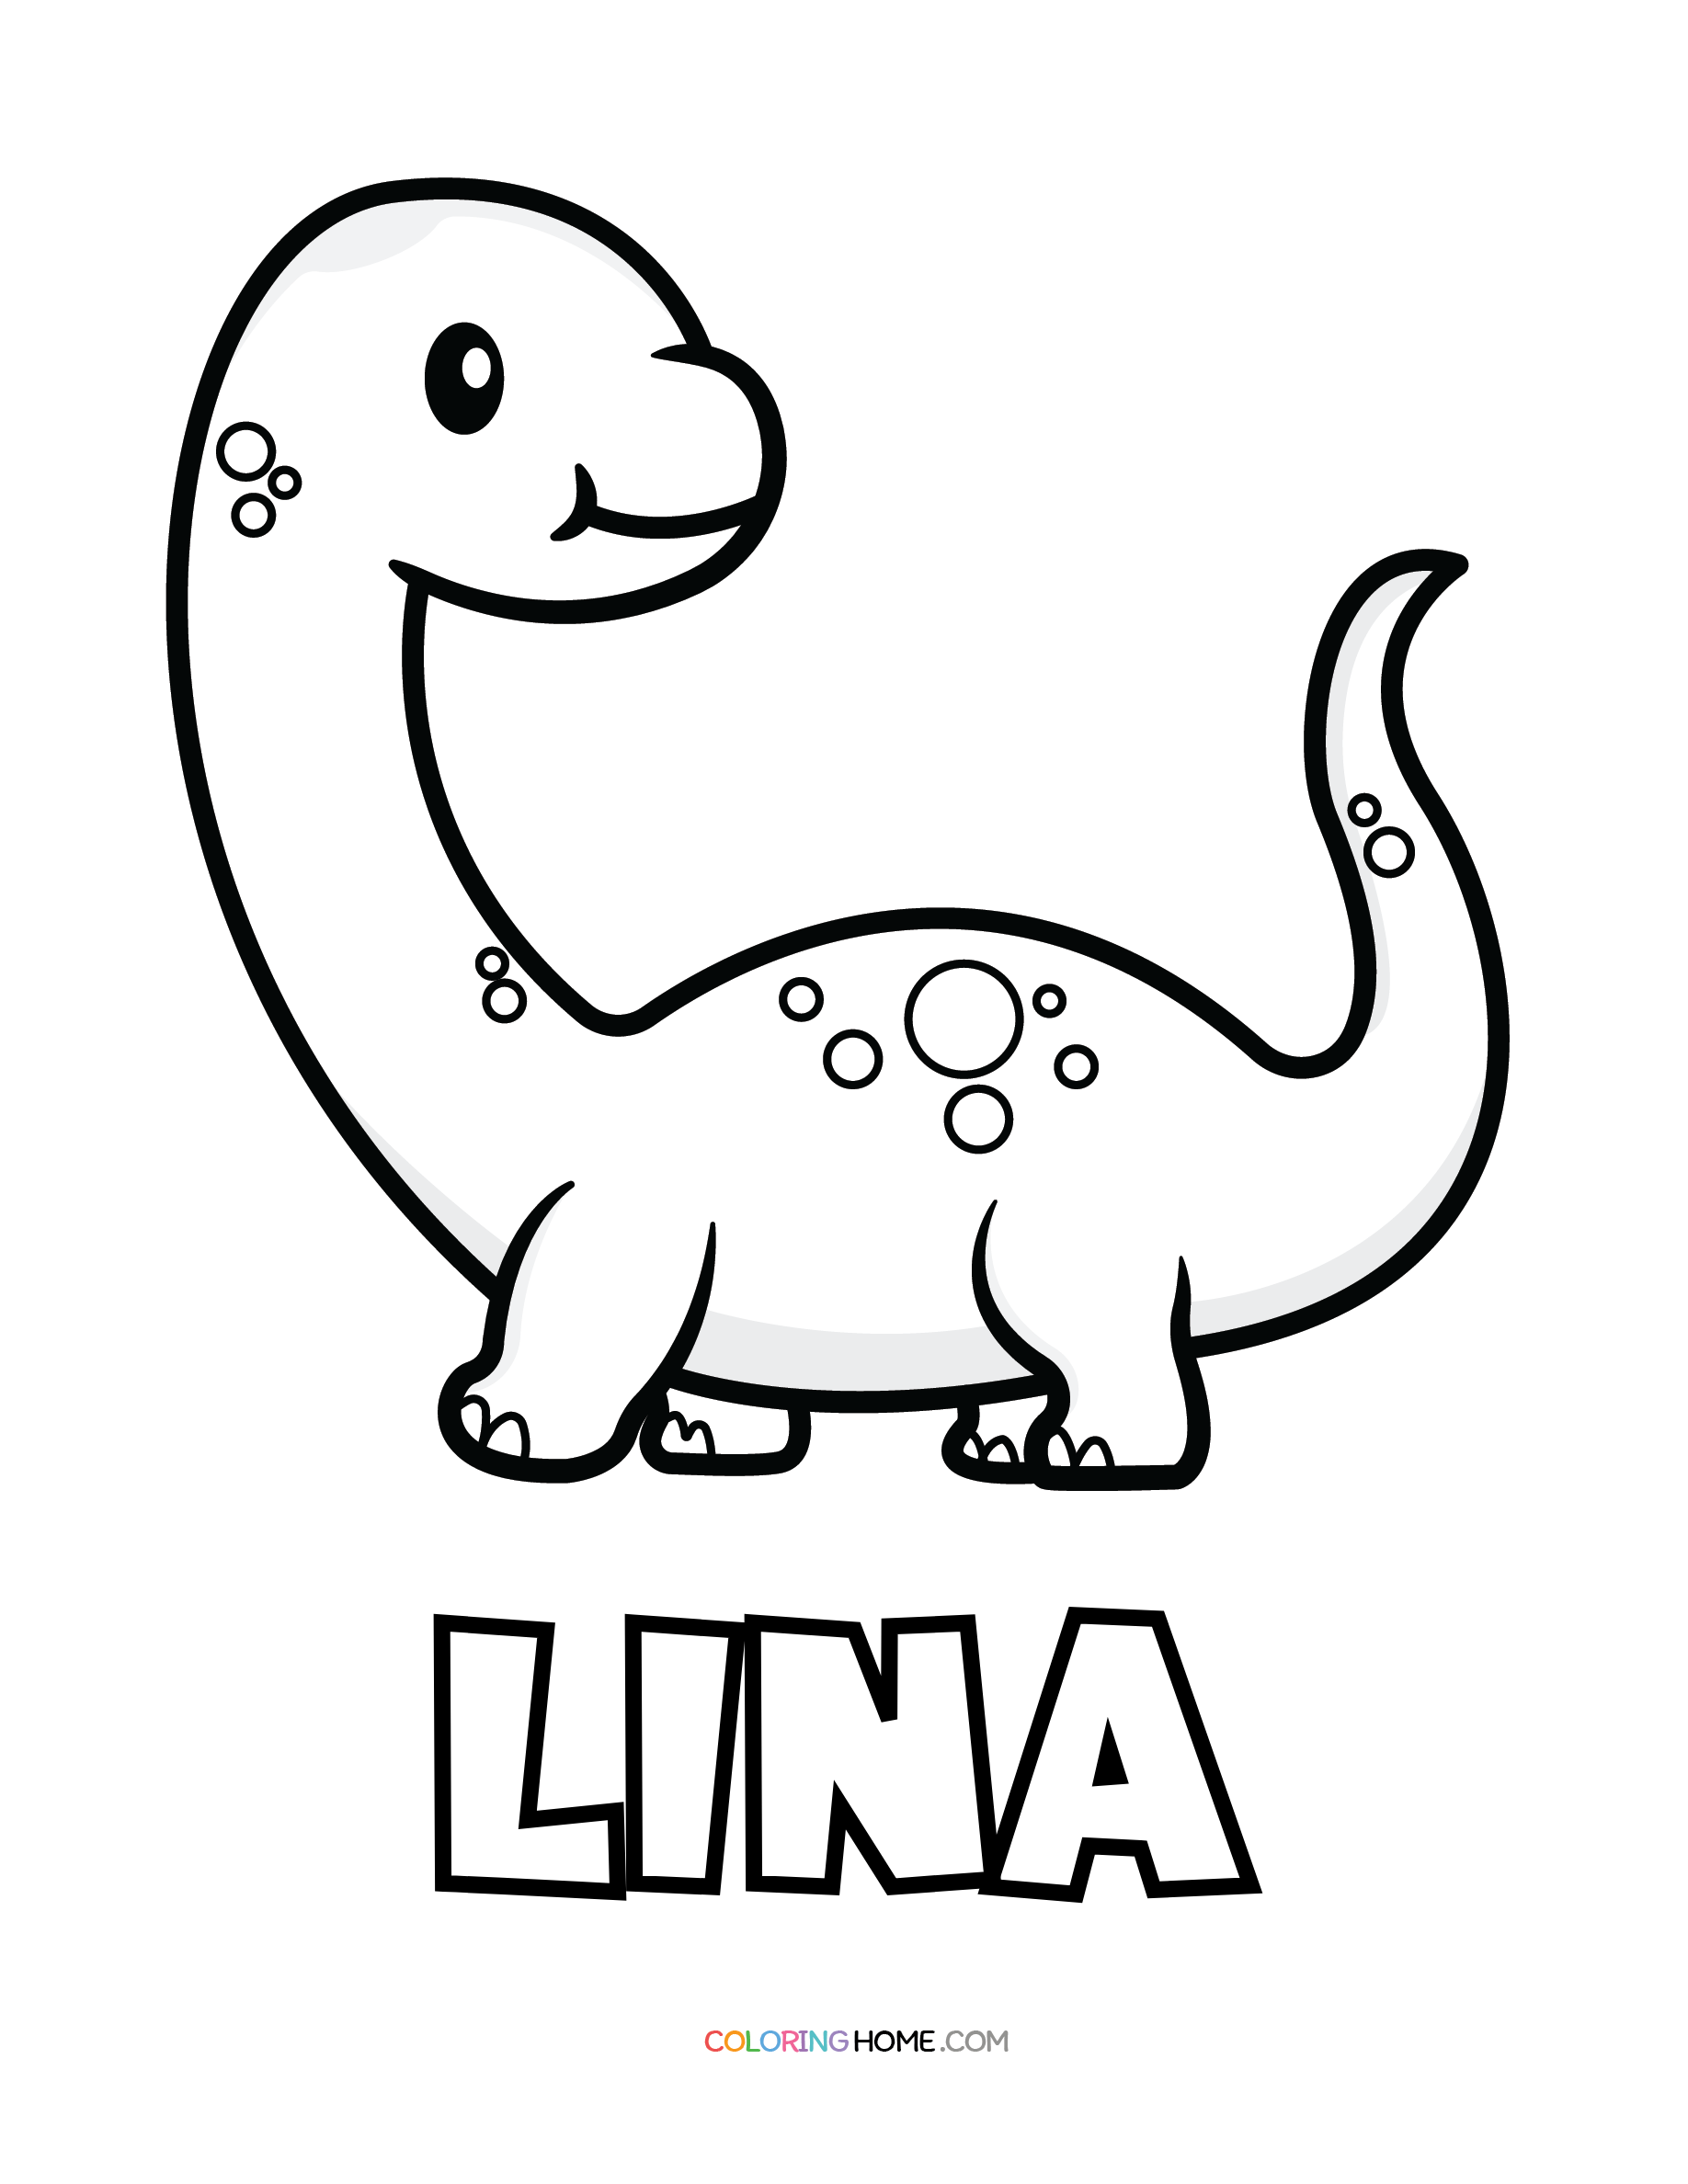 Lina dinosaur coloring page